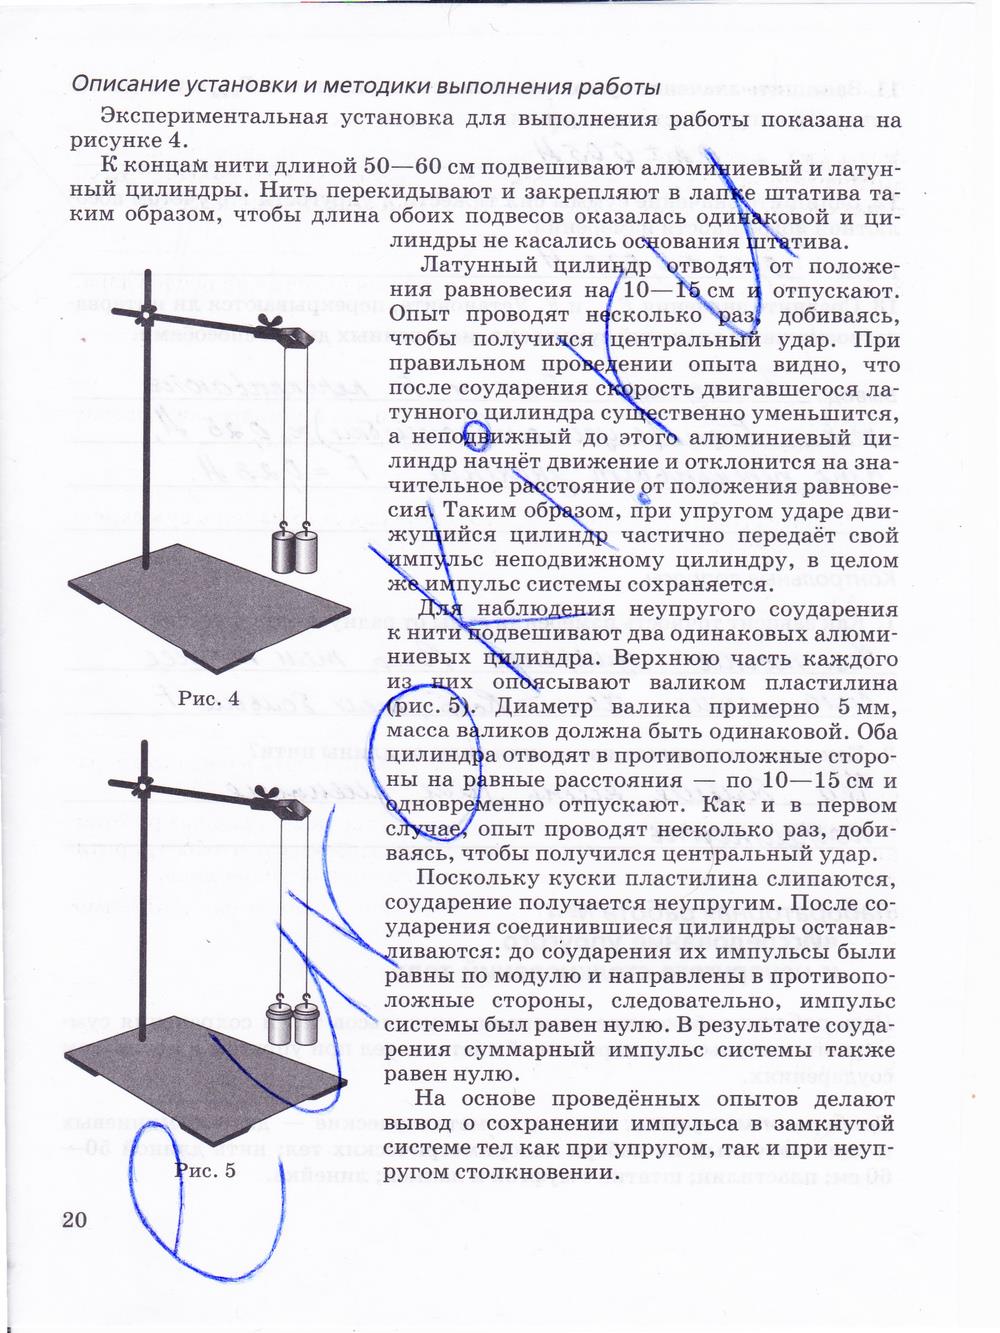 гдз 10 класс тетрадь для лабораторных работ страница 20 физика Пурышева, Степанов